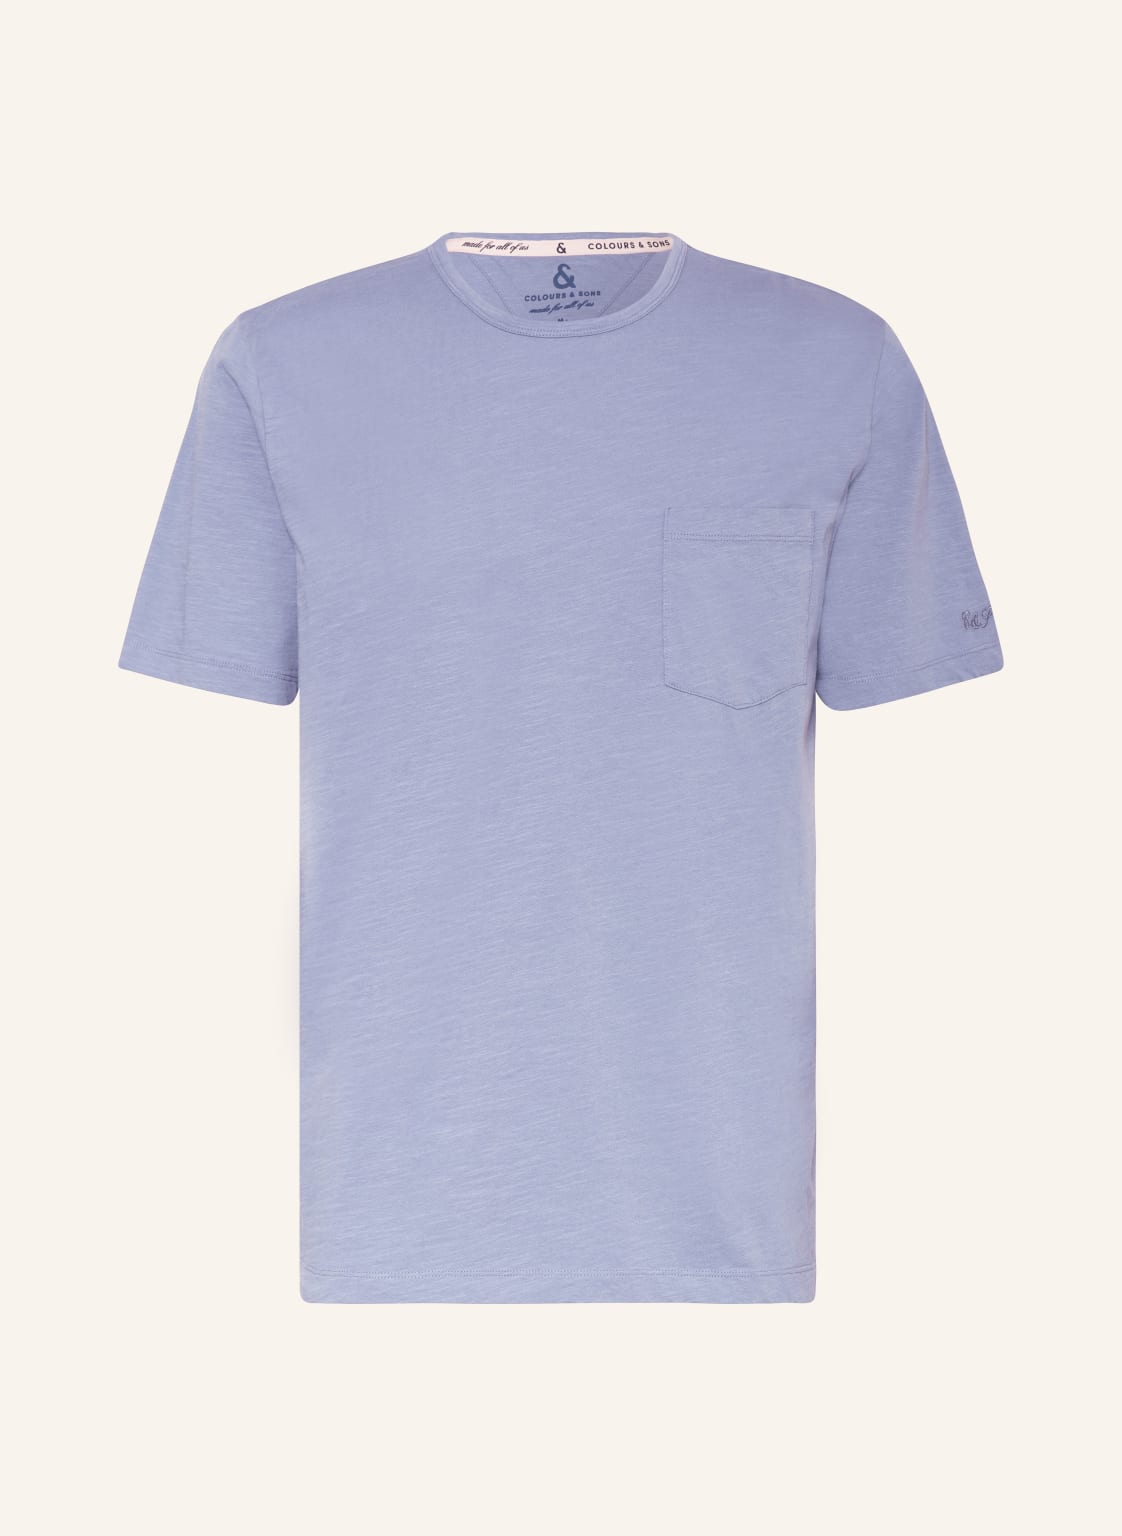 Colours & Sons T-Shirt blau von COLOURS & SONS